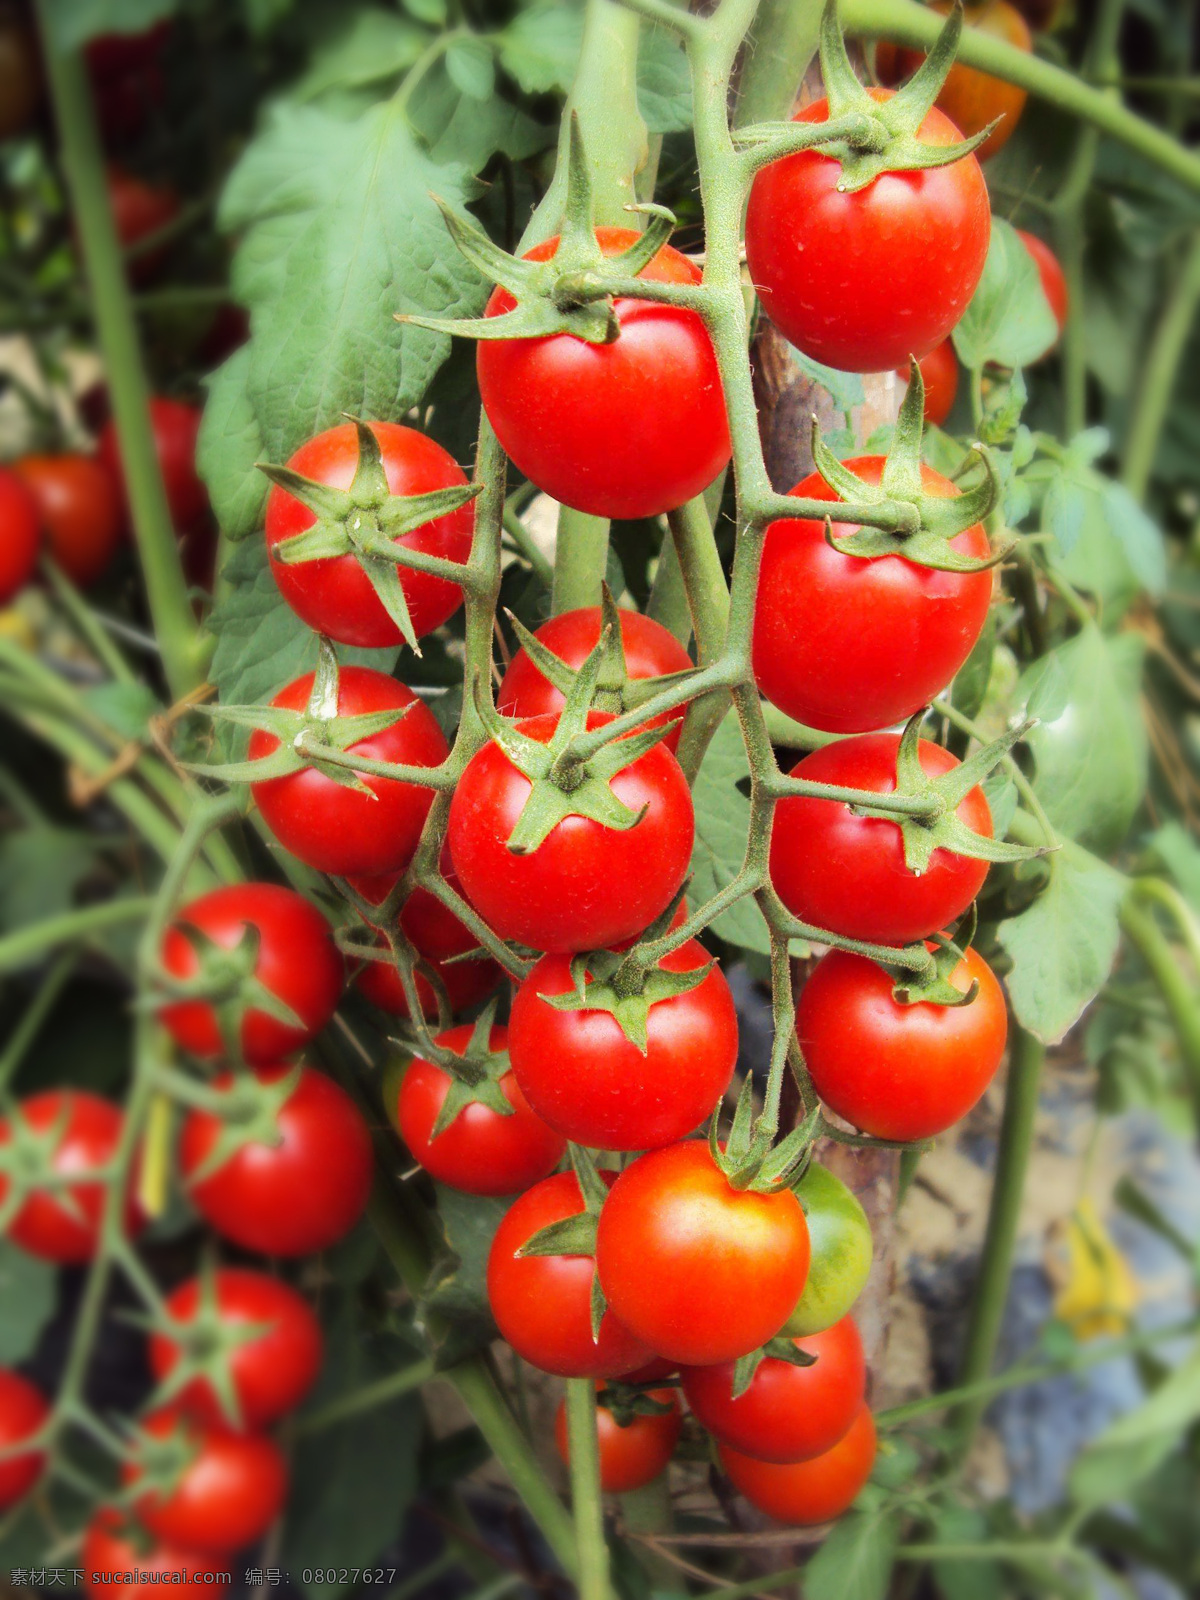 小番茄 番茄 小西红柿 西红柿 大串西红柿 新鲜番茄 新鲜西红柿 圣女果 鲜果 水果 蔬果 果蔬 新鲜果蔬 生物世界 蔬菜